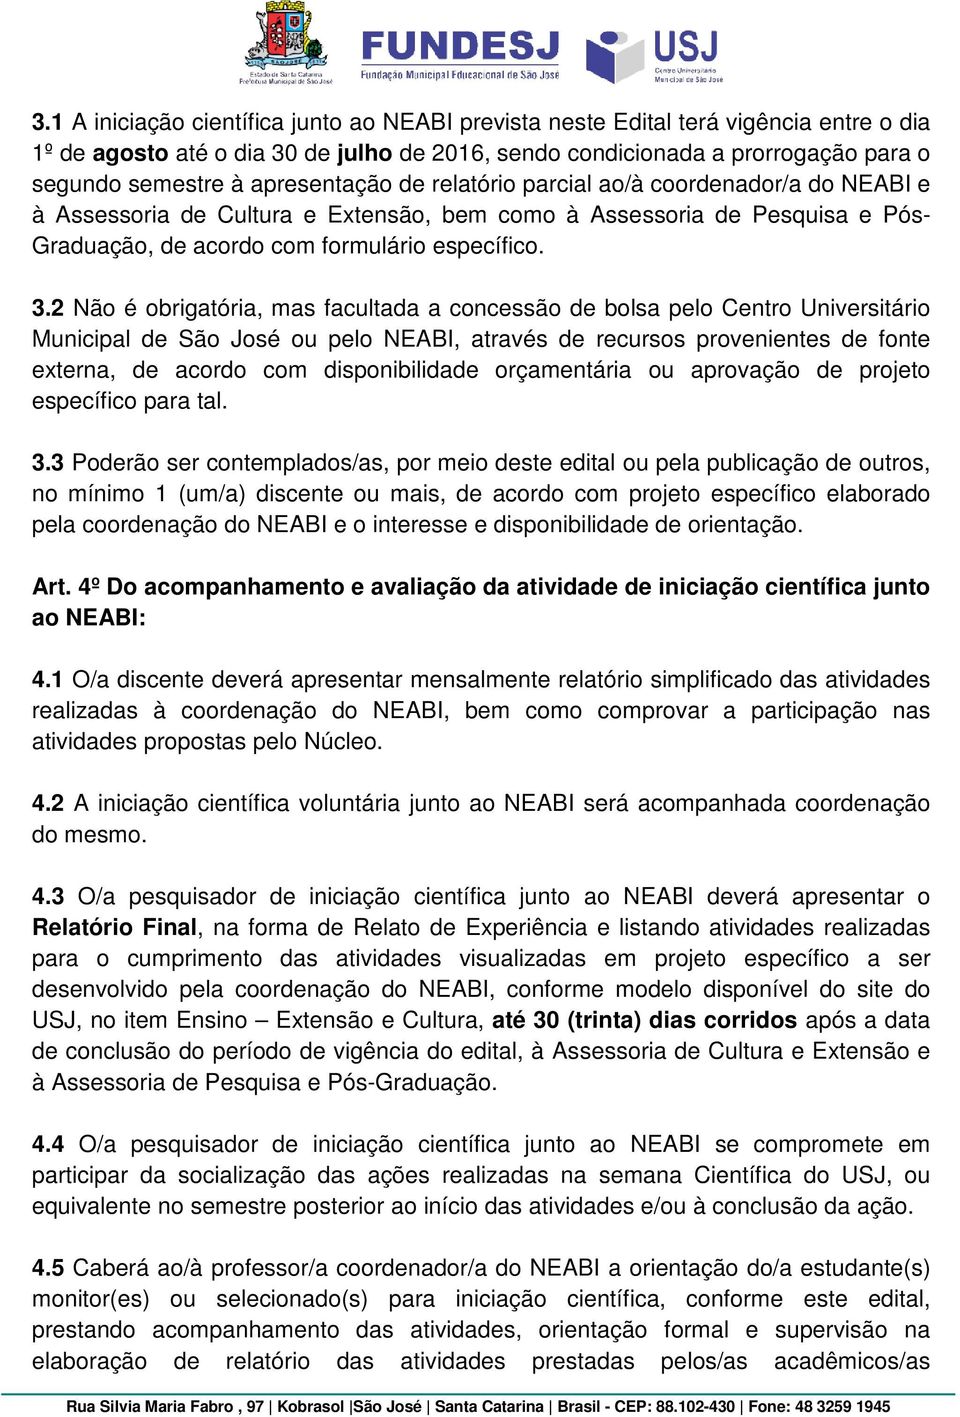 2 Não é obrigatória, mas facultada a concessão de bolsa pelo Centro Universitário Municipal de São José ou pelo NEABI, através de recursos provenientes de fonte externa, de acordo com disponibilidade